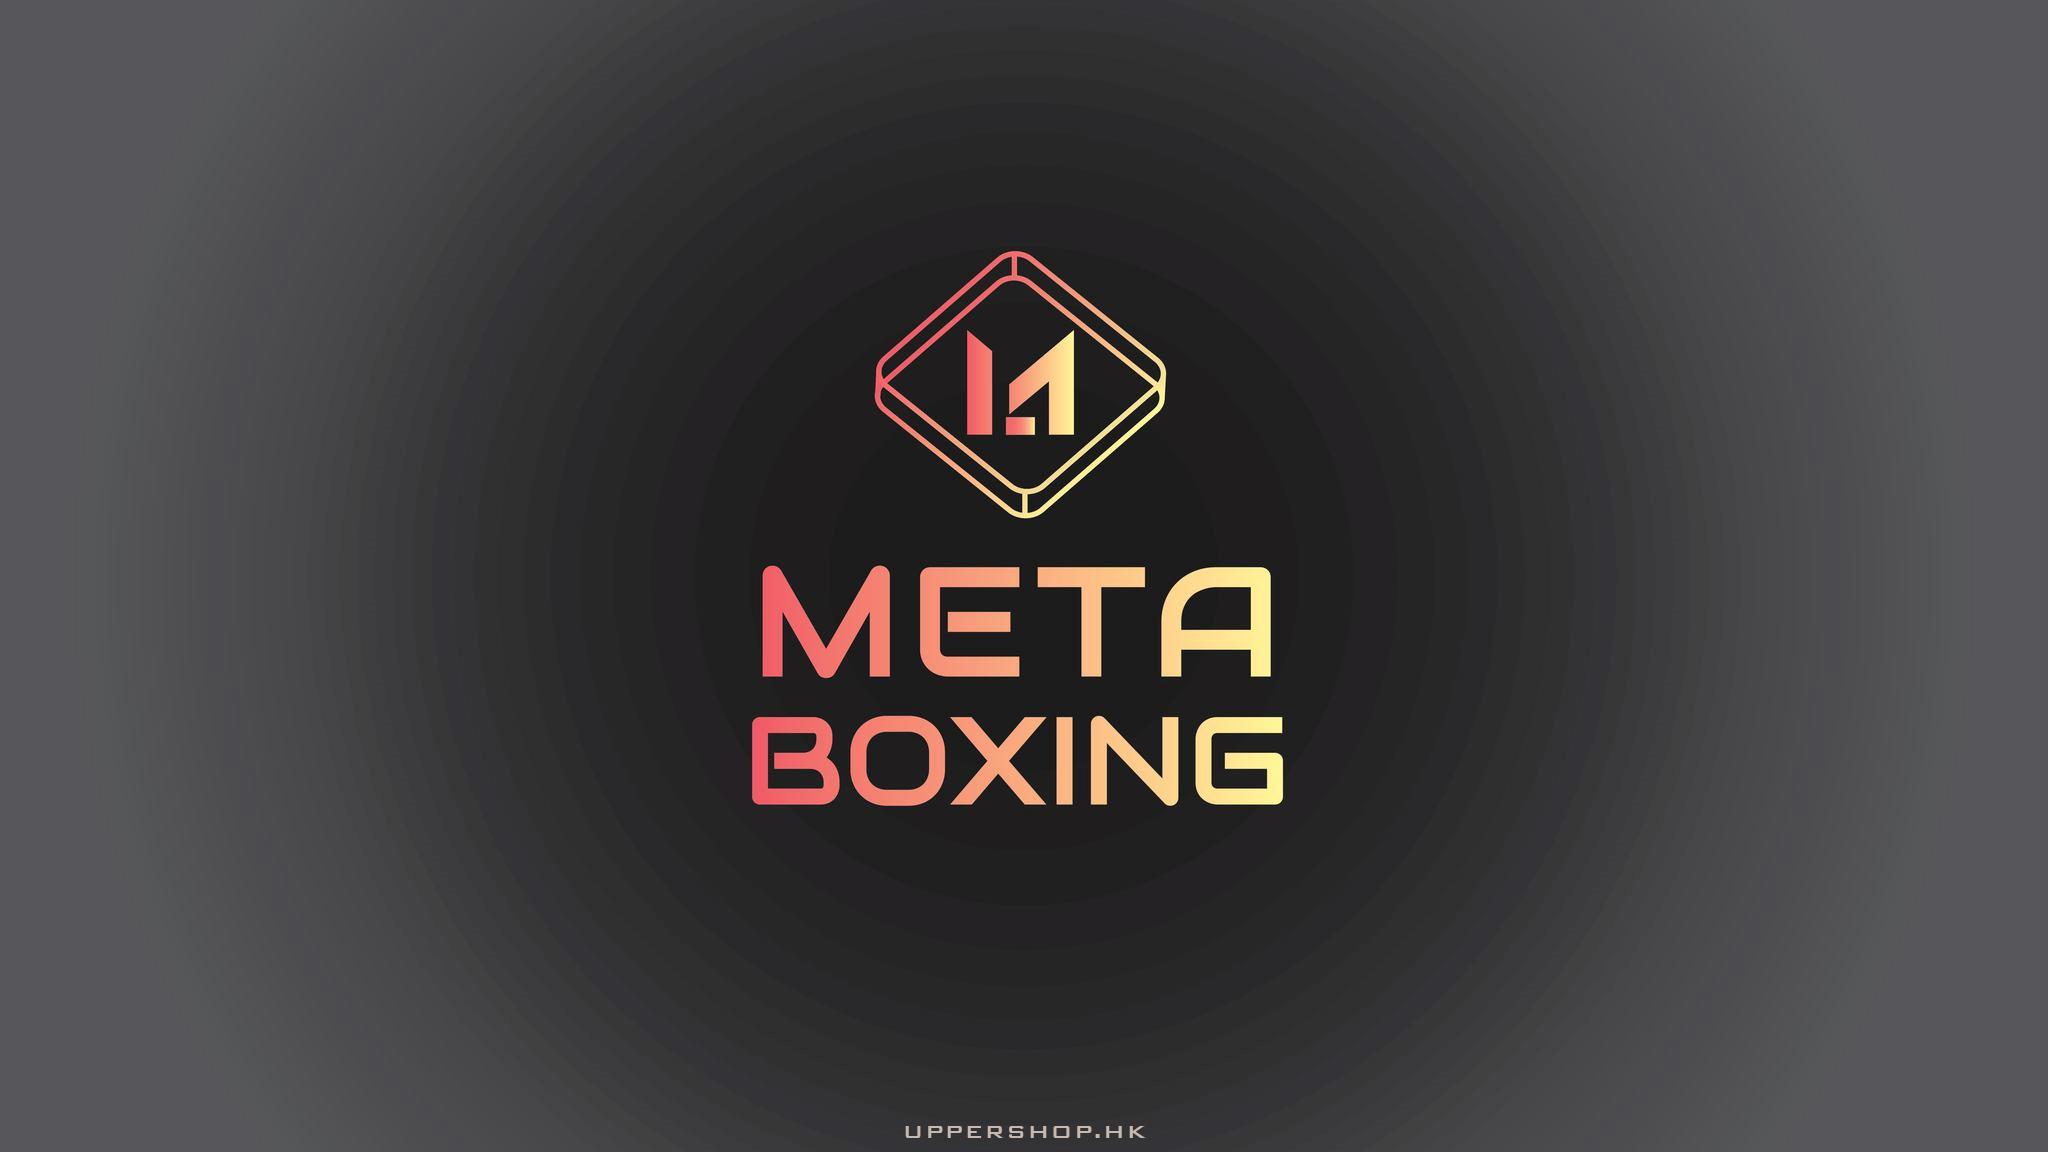 MetaBoxing